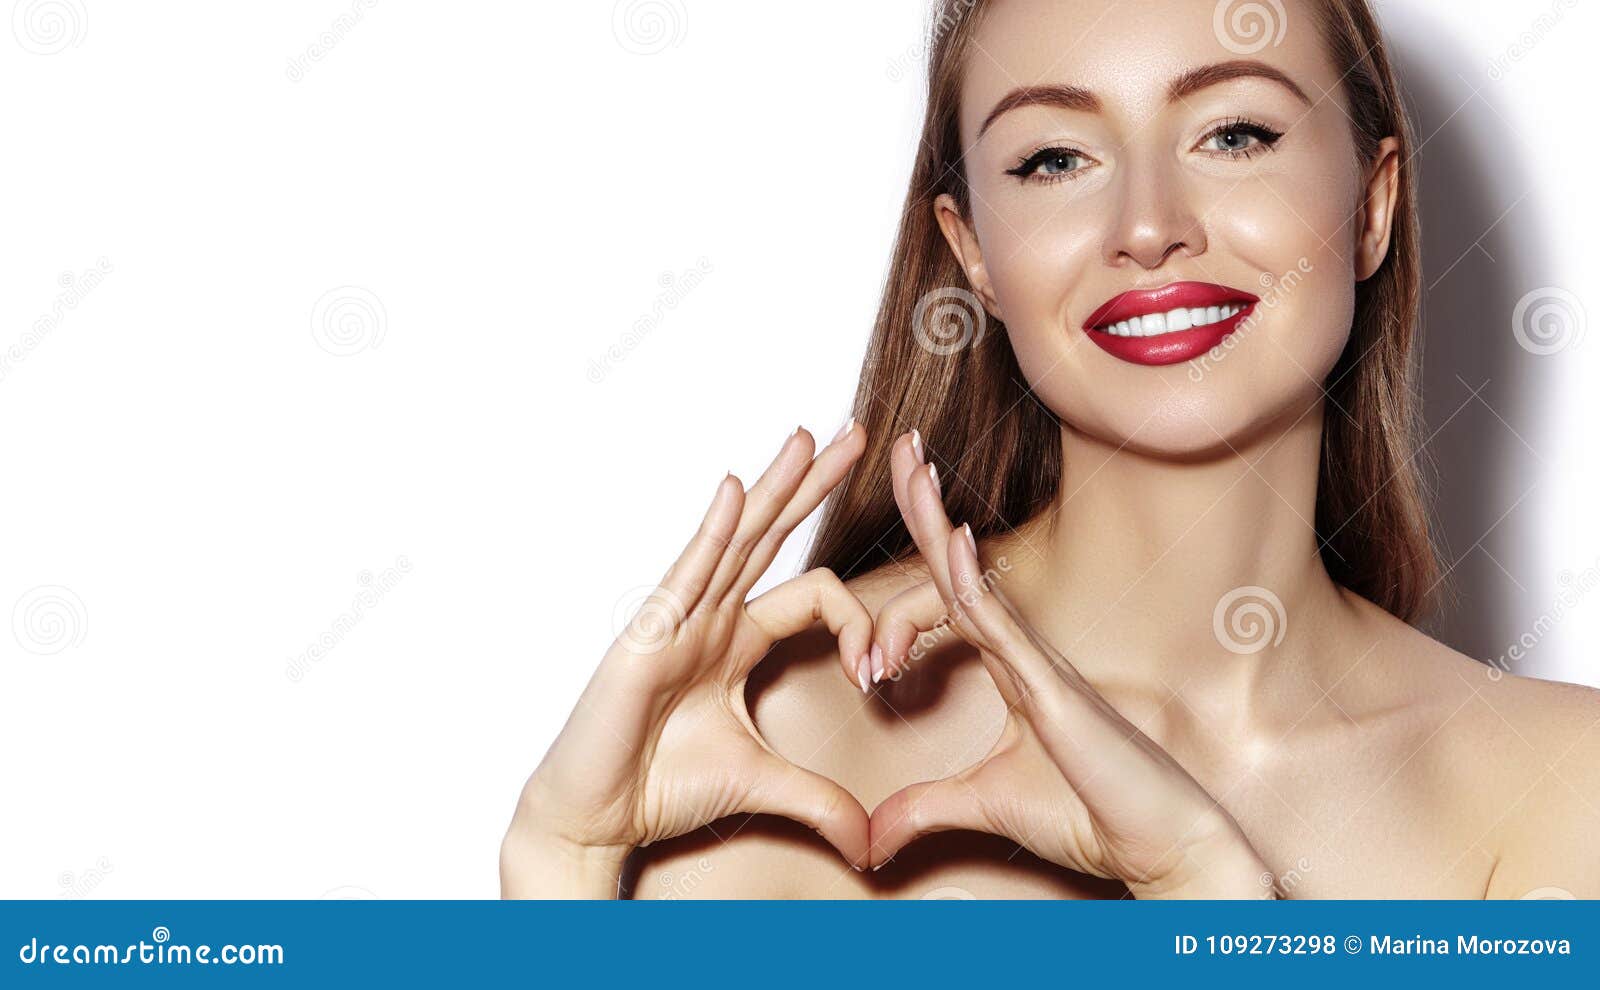 Ρομαντική νέα γυναίκα που κάνει τη μορφή καρδιών με τα δάχτυλά της Σύμβολο αγάπης και ημέρας βαλεντίνων Κορίτσι μόδας με το ευτυχ